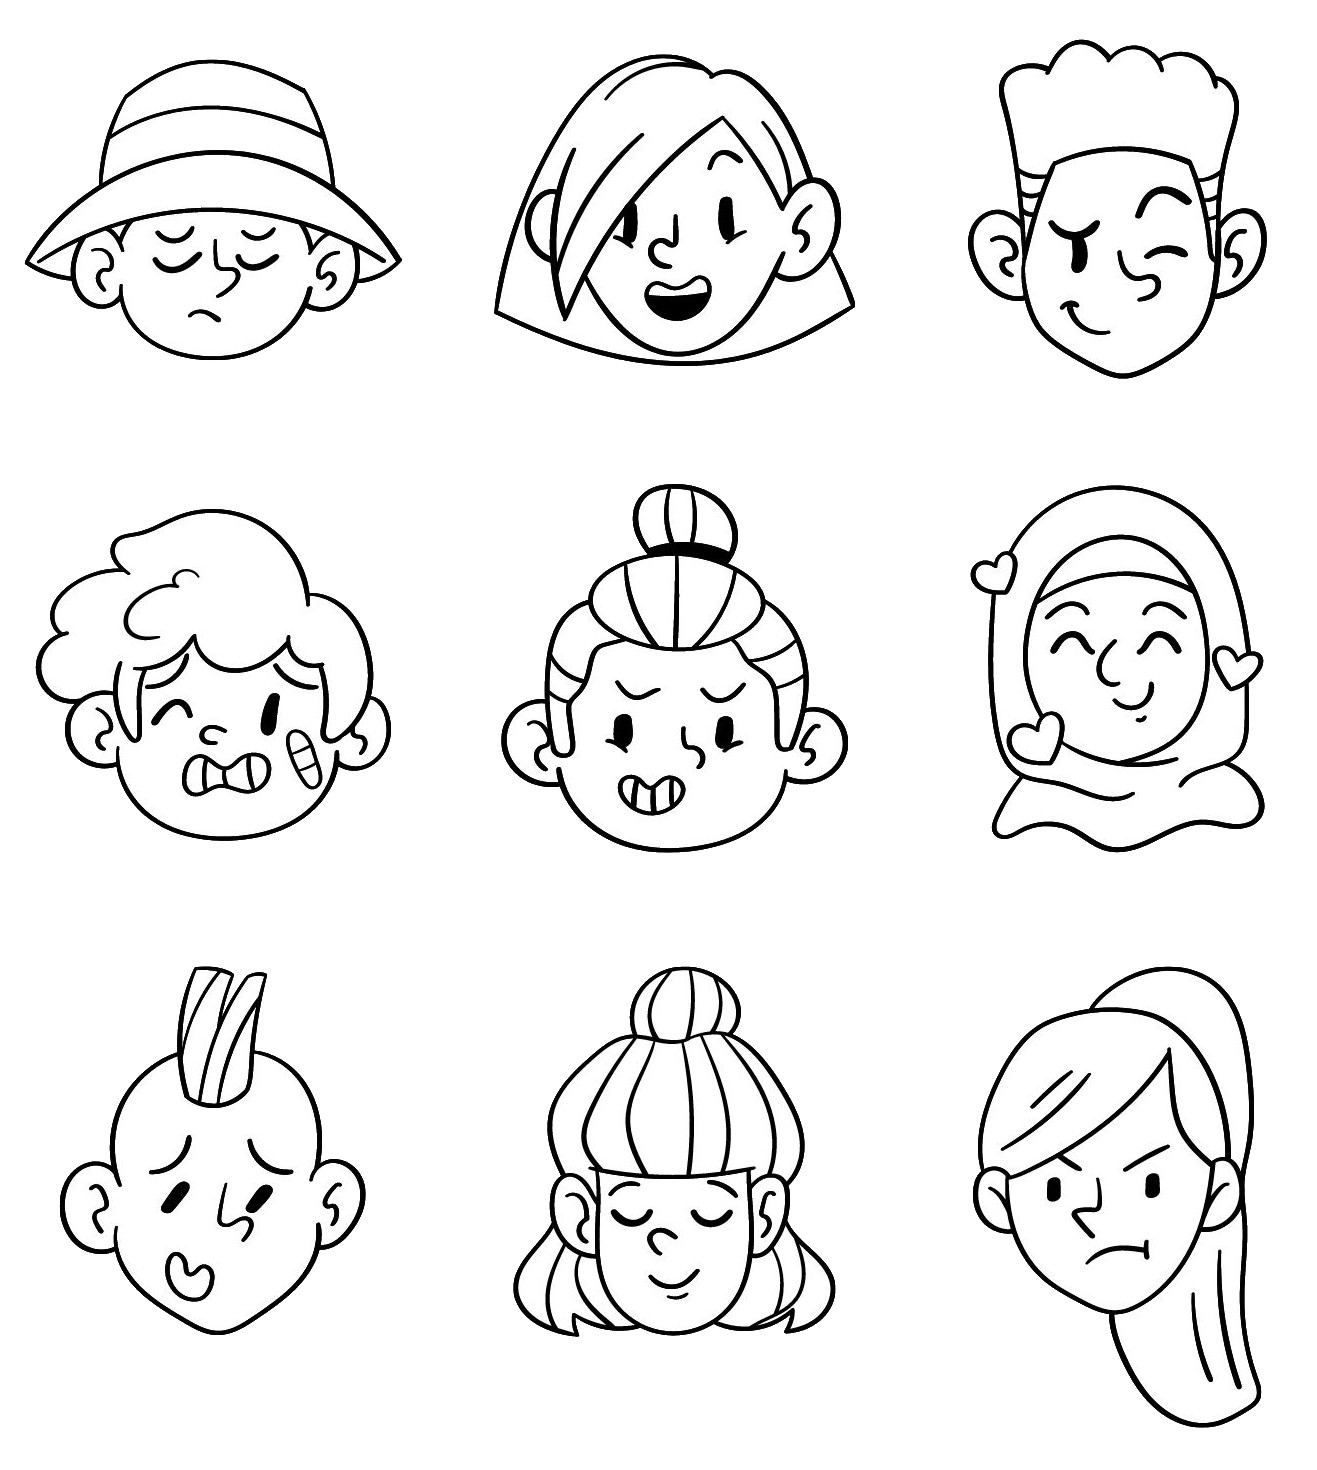 La imagen muestra muchas caras distintas en blanco y negro para colorear